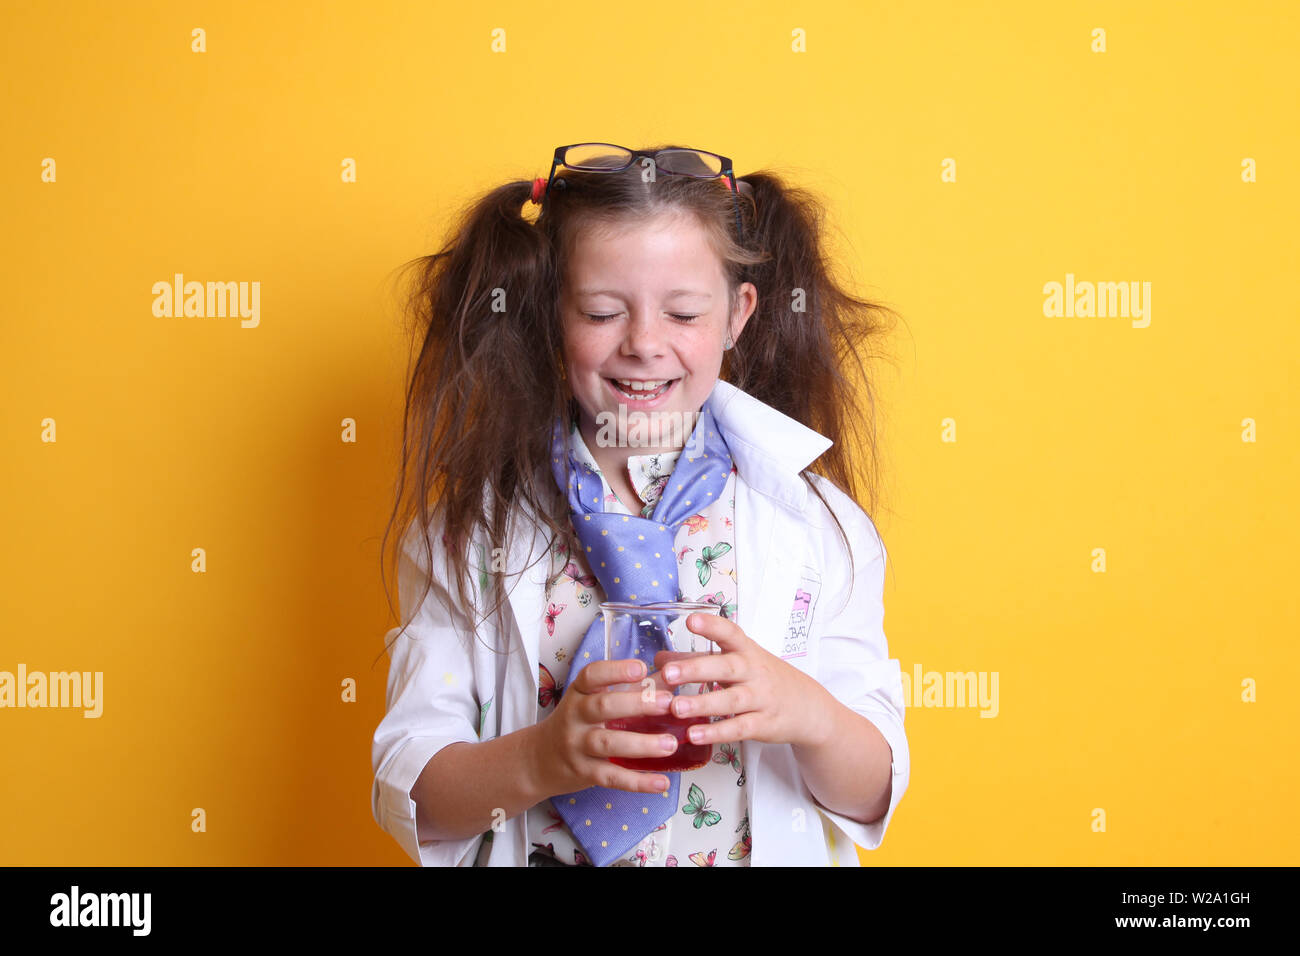 Signor - Scienza Geek giovane ragazza / femmina - 7 anni - bambino ridere per fotocamera, gli occhi chiusi, tenendo in borosilicato scienza becher su sfondo giallo Foto Stock